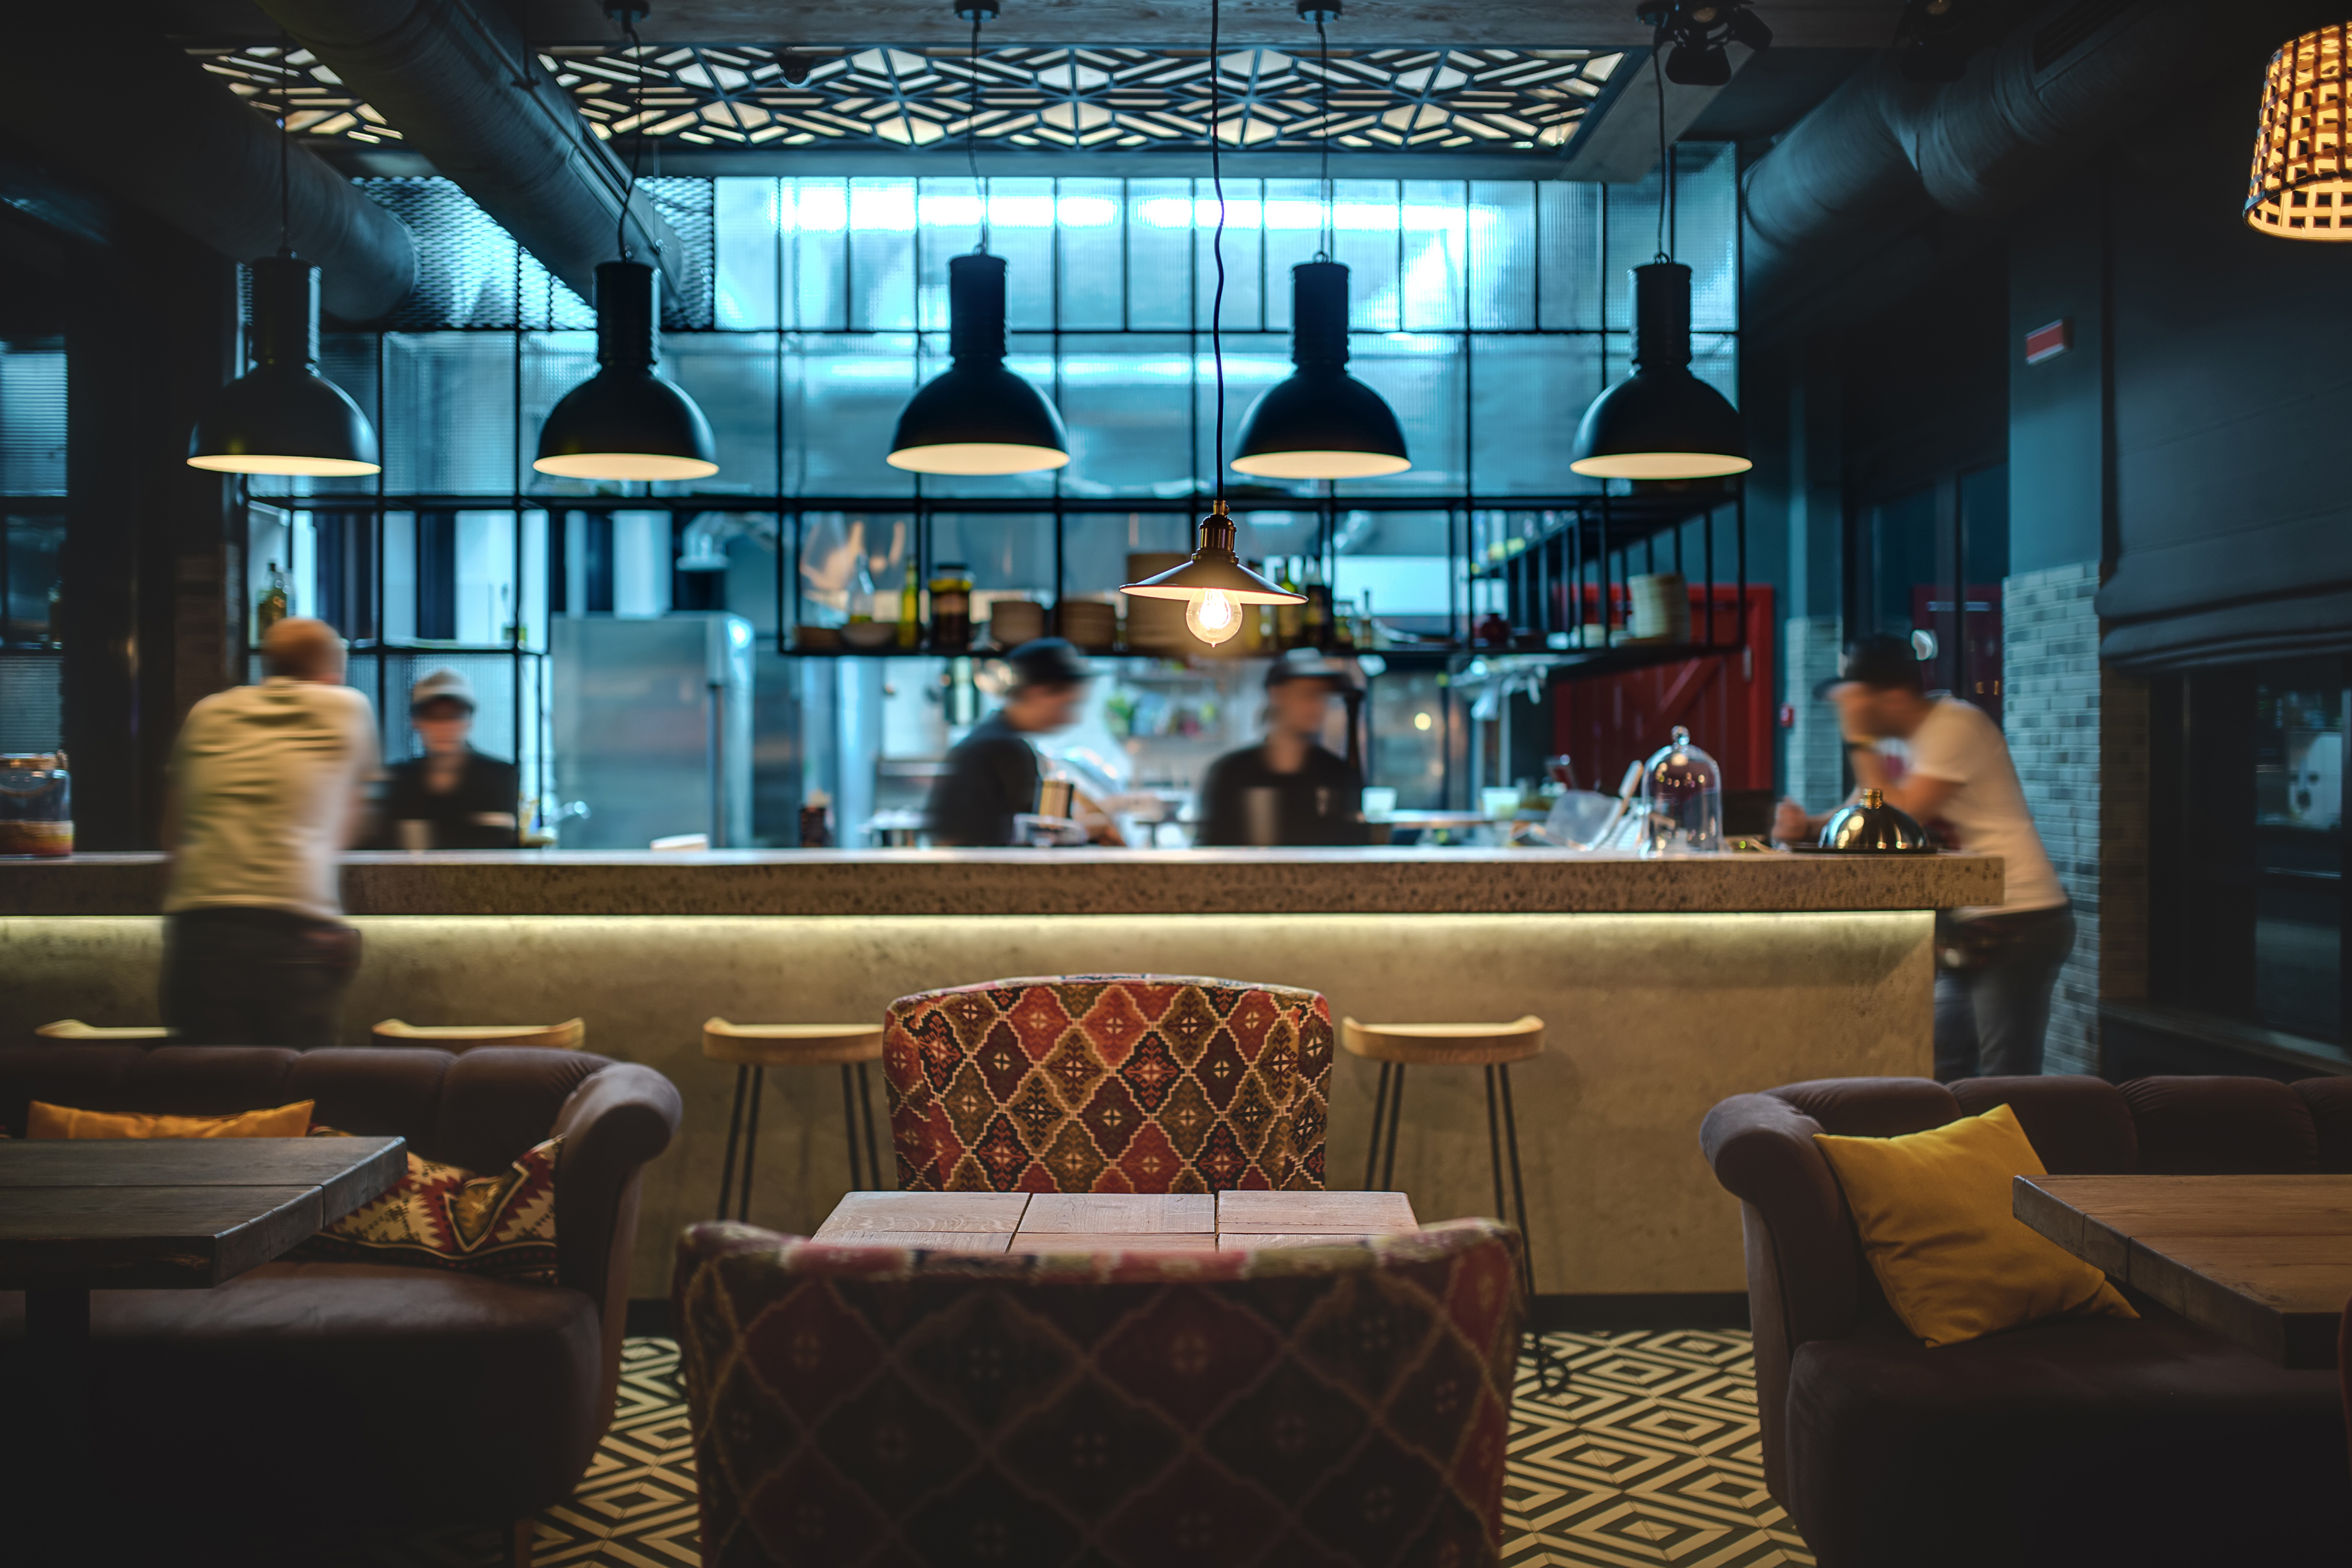 Salón a media luz estilo loft en un restaurante con cocina abierta al fondo. | Fuente: Shutterstock